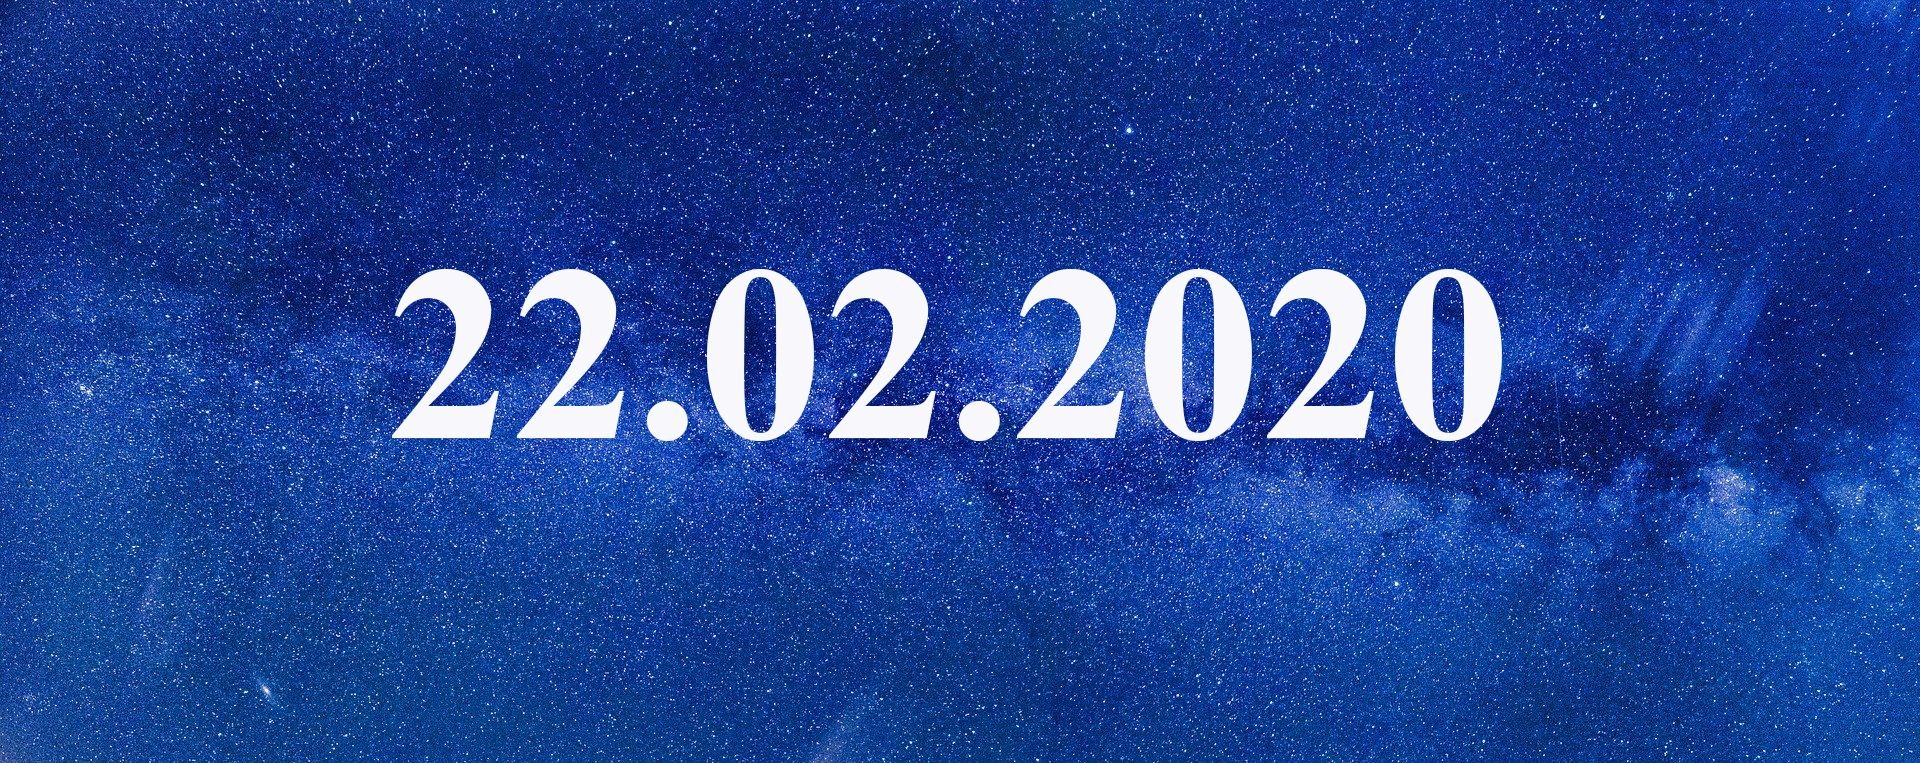 22.11 дата. Зеркальная Дата 22.02.2022. Дата 22.02.2022. Дата красивыми цифрами. 02.02.2022 Мистическая Дата.